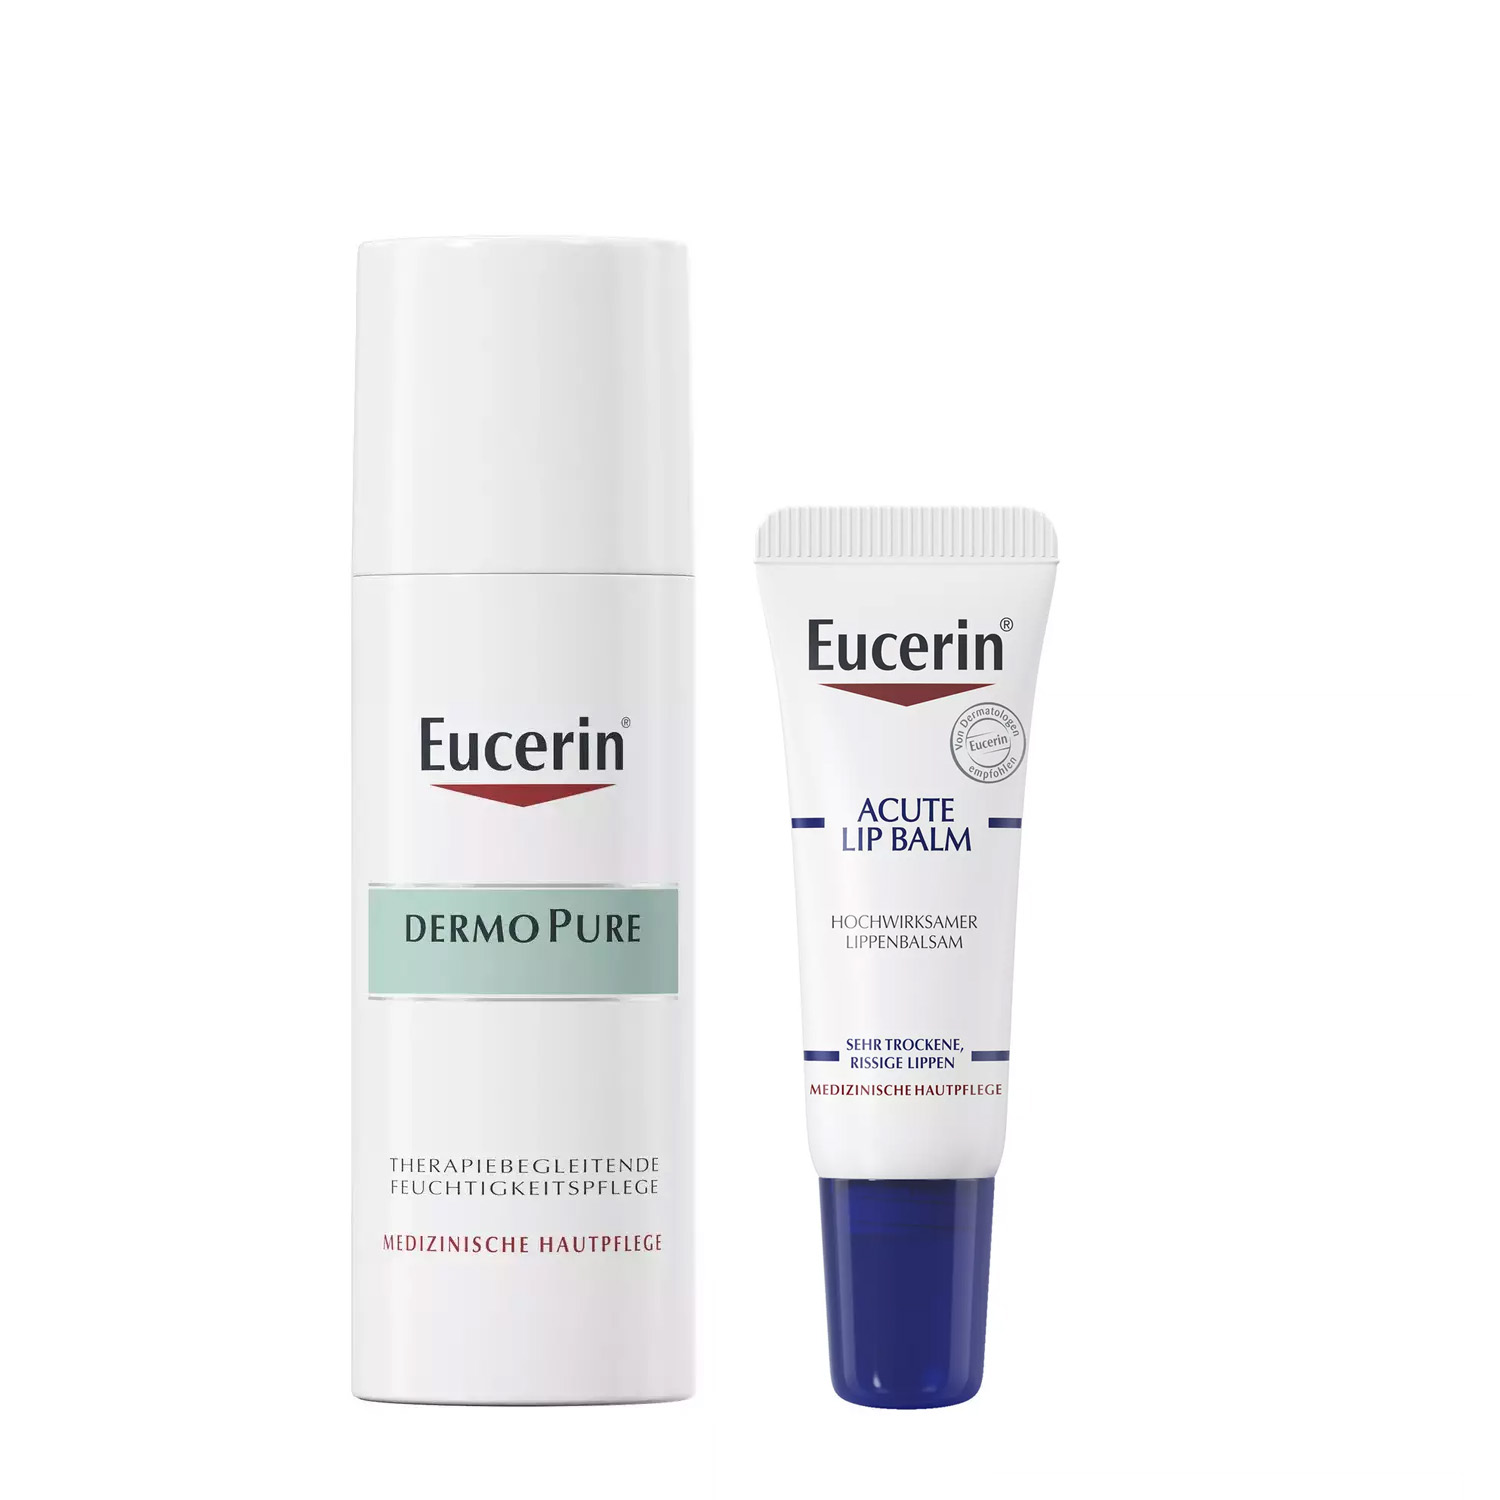 Eucerin Набор успокаивающий для проблемной кожи: бальзам для губ 10 мл + крем 50 мл (Eucerin, DermoPure) eucerin успокаивающий увлажняющий крем для проблемной кожи 50 мл eucerin dermopure